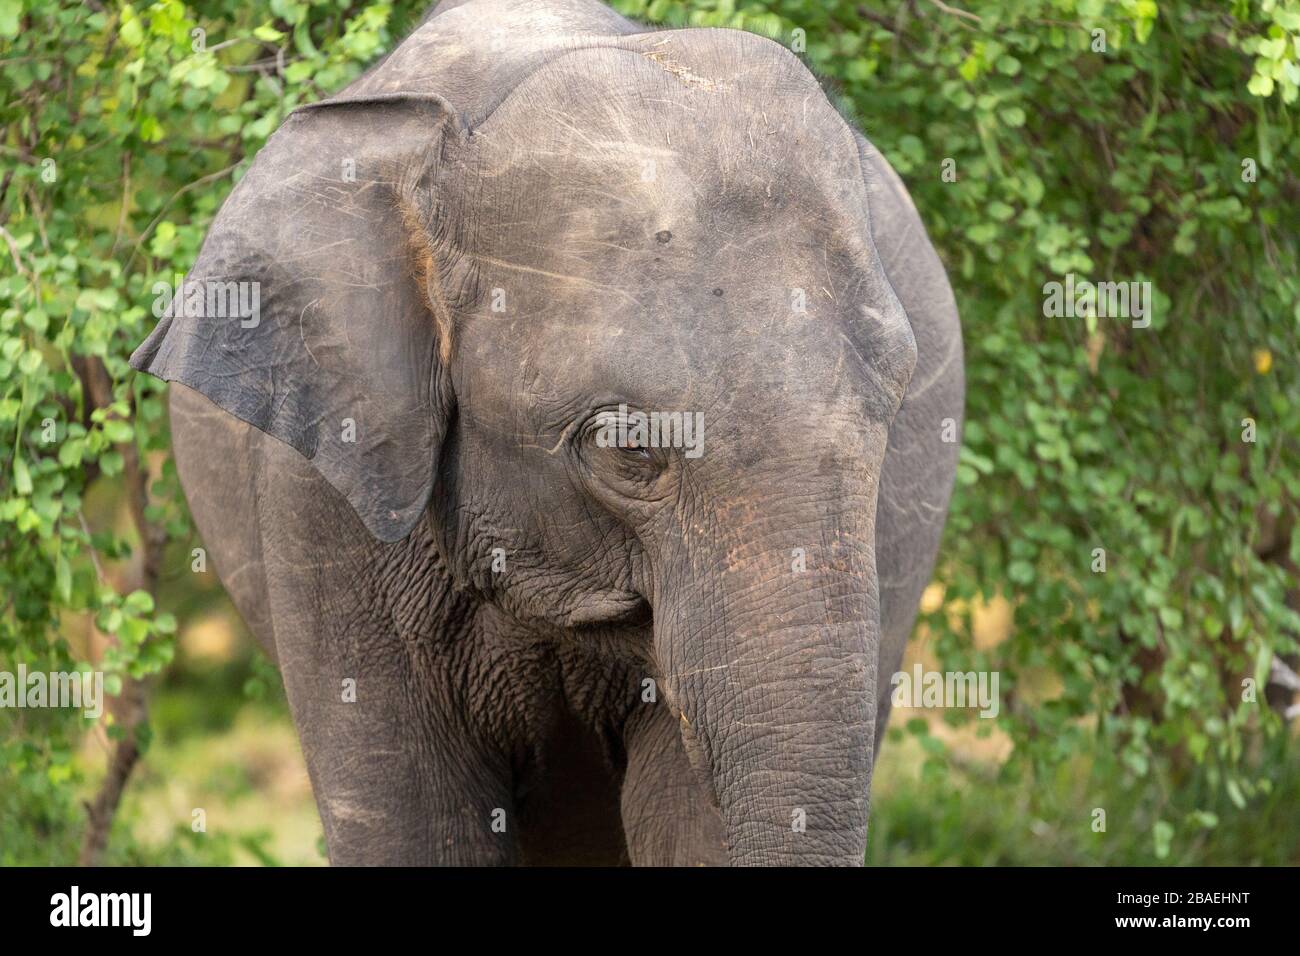 Detalle de un elefante en el Parque Nacional Minneriya, Sri Lanka Foto de stock